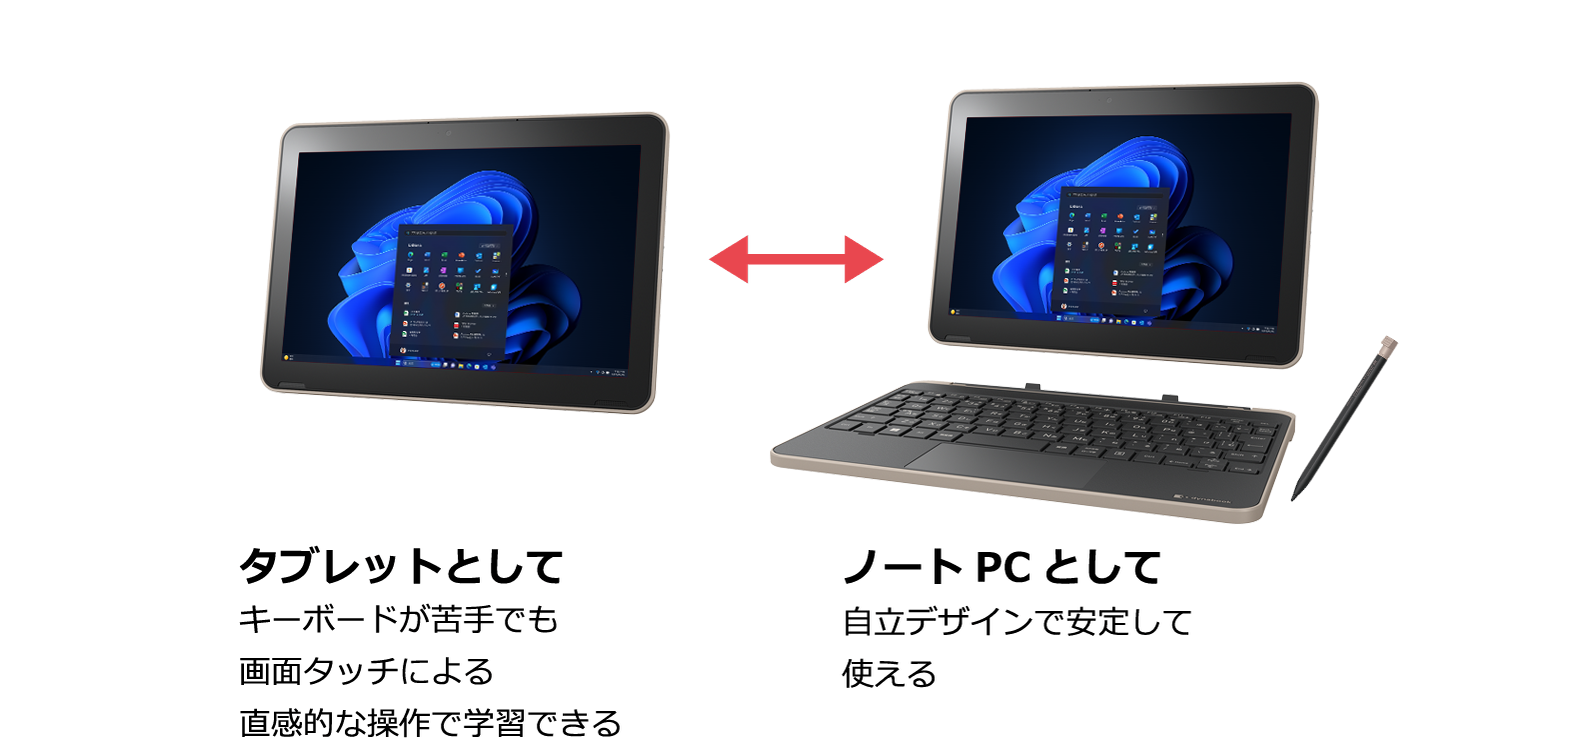 タブレットとしてキーボードが苦手でも画面タッチによる直感的な操作で学習できる / ノートPCとして自立デザインで安定して使える